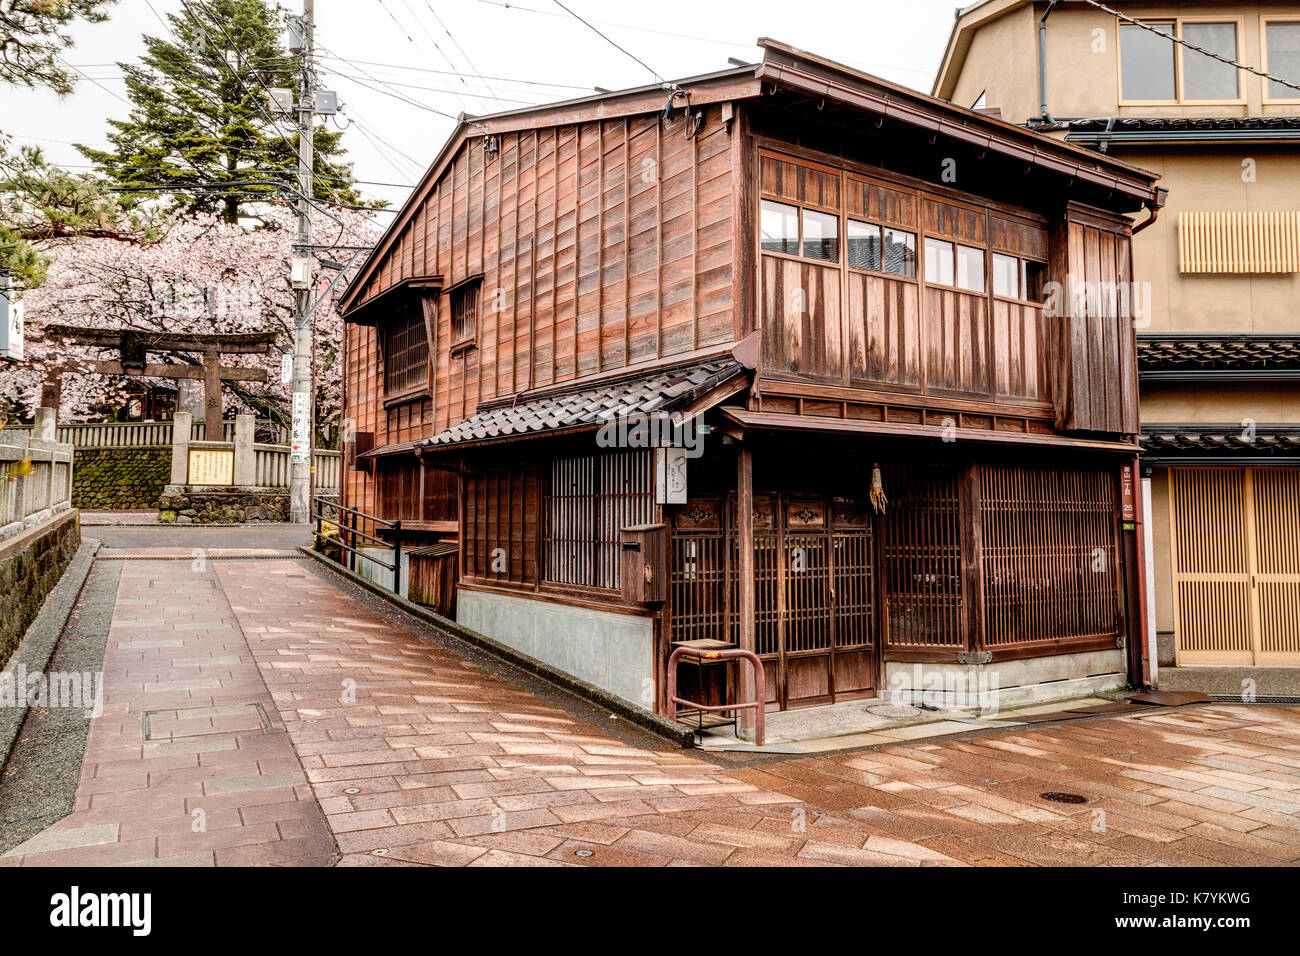 Higashi Chaya popular tourist district of Kanazawa, Japan. Japanese Edo period style wooden merchant house with slat shutters on lower windows. Stock Photo